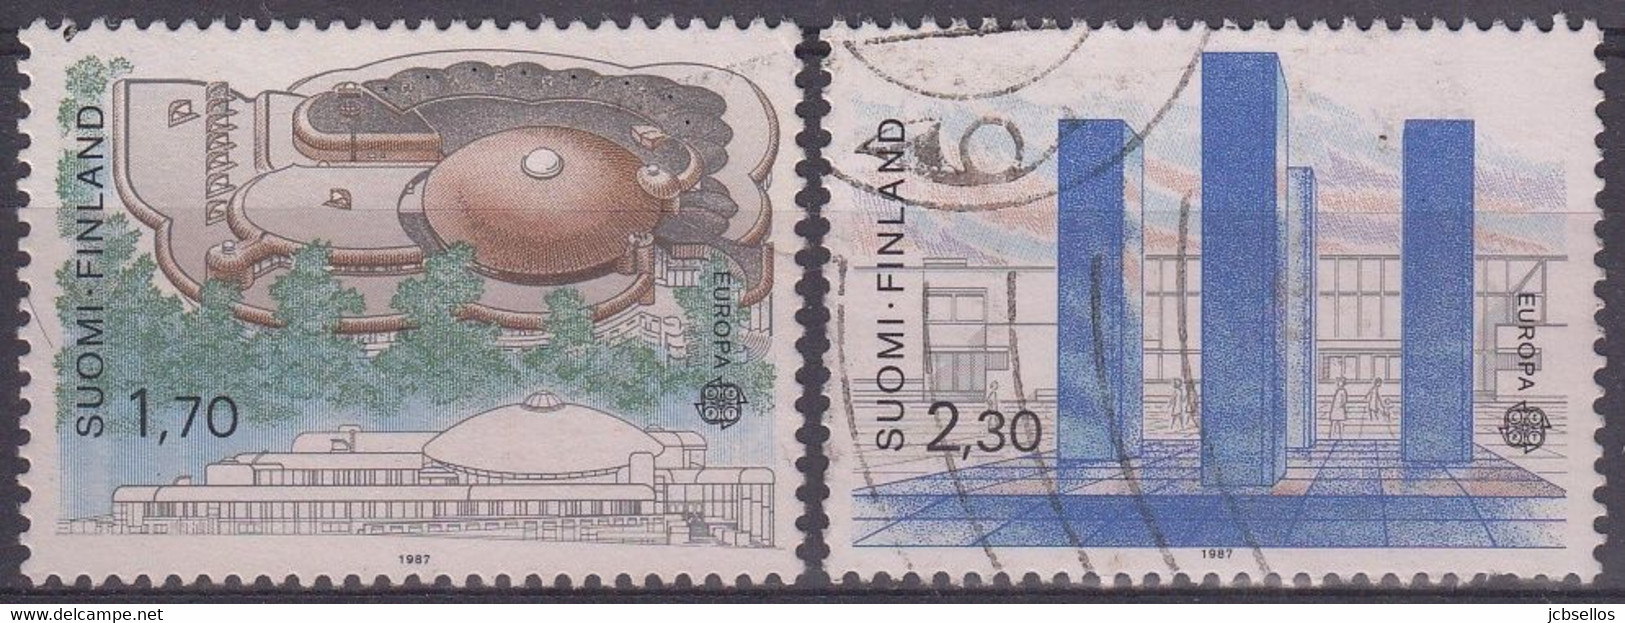 FINLANDIA 1987 Nº 985/986 USADO - Gebruikt